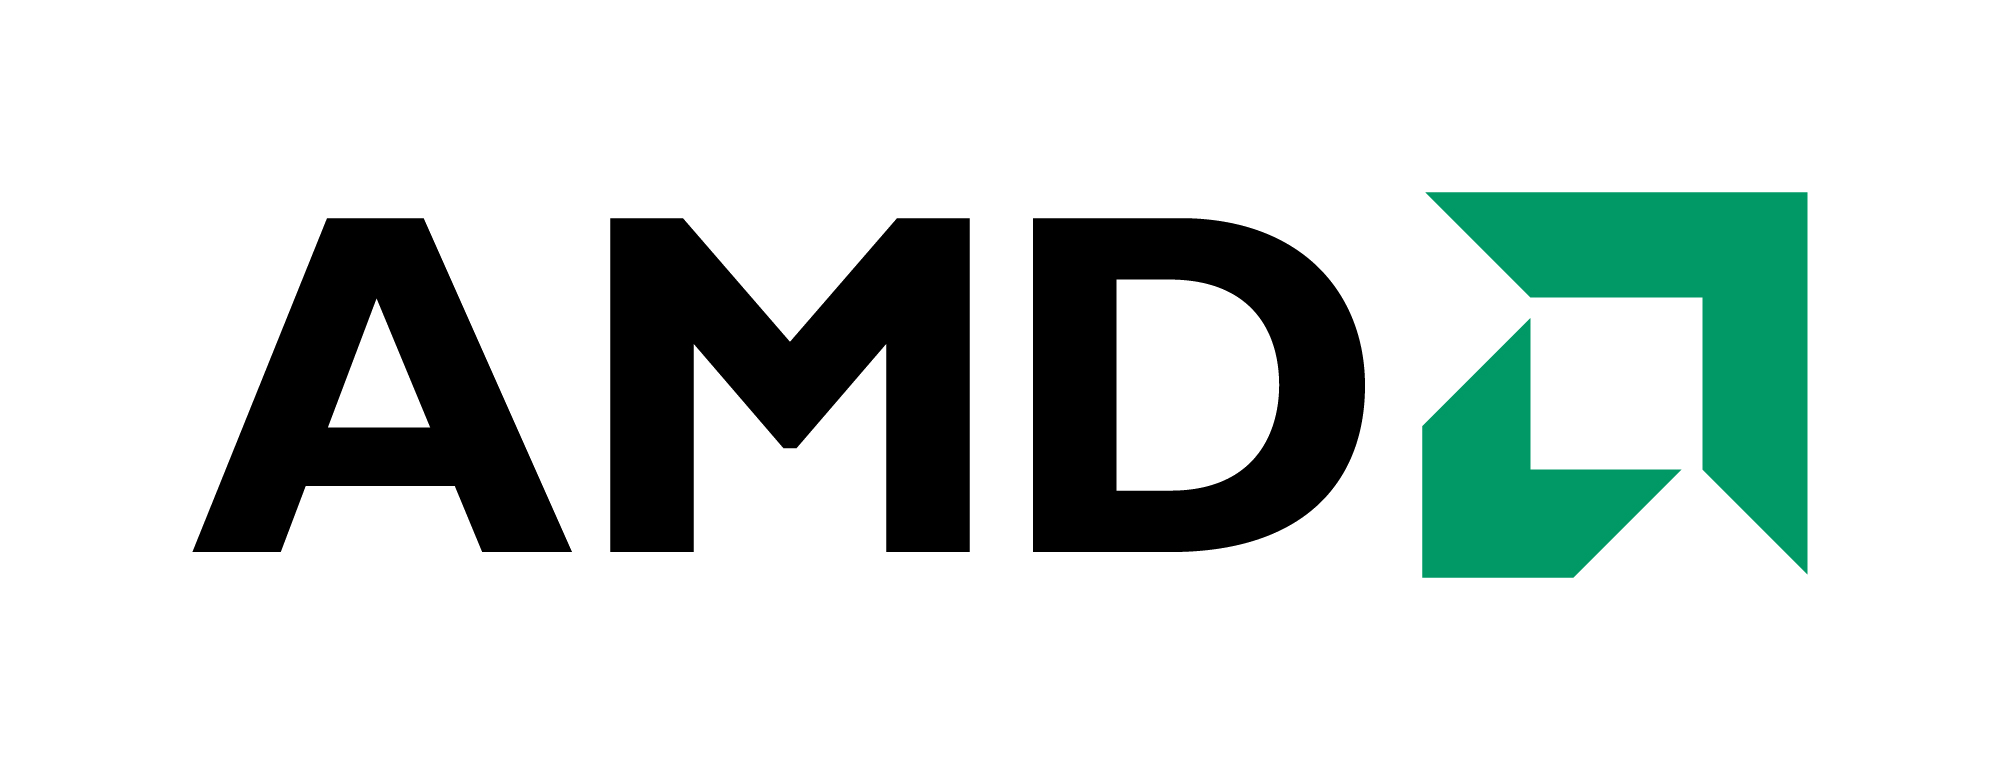 Amd Logo Wallpaper For Desktop